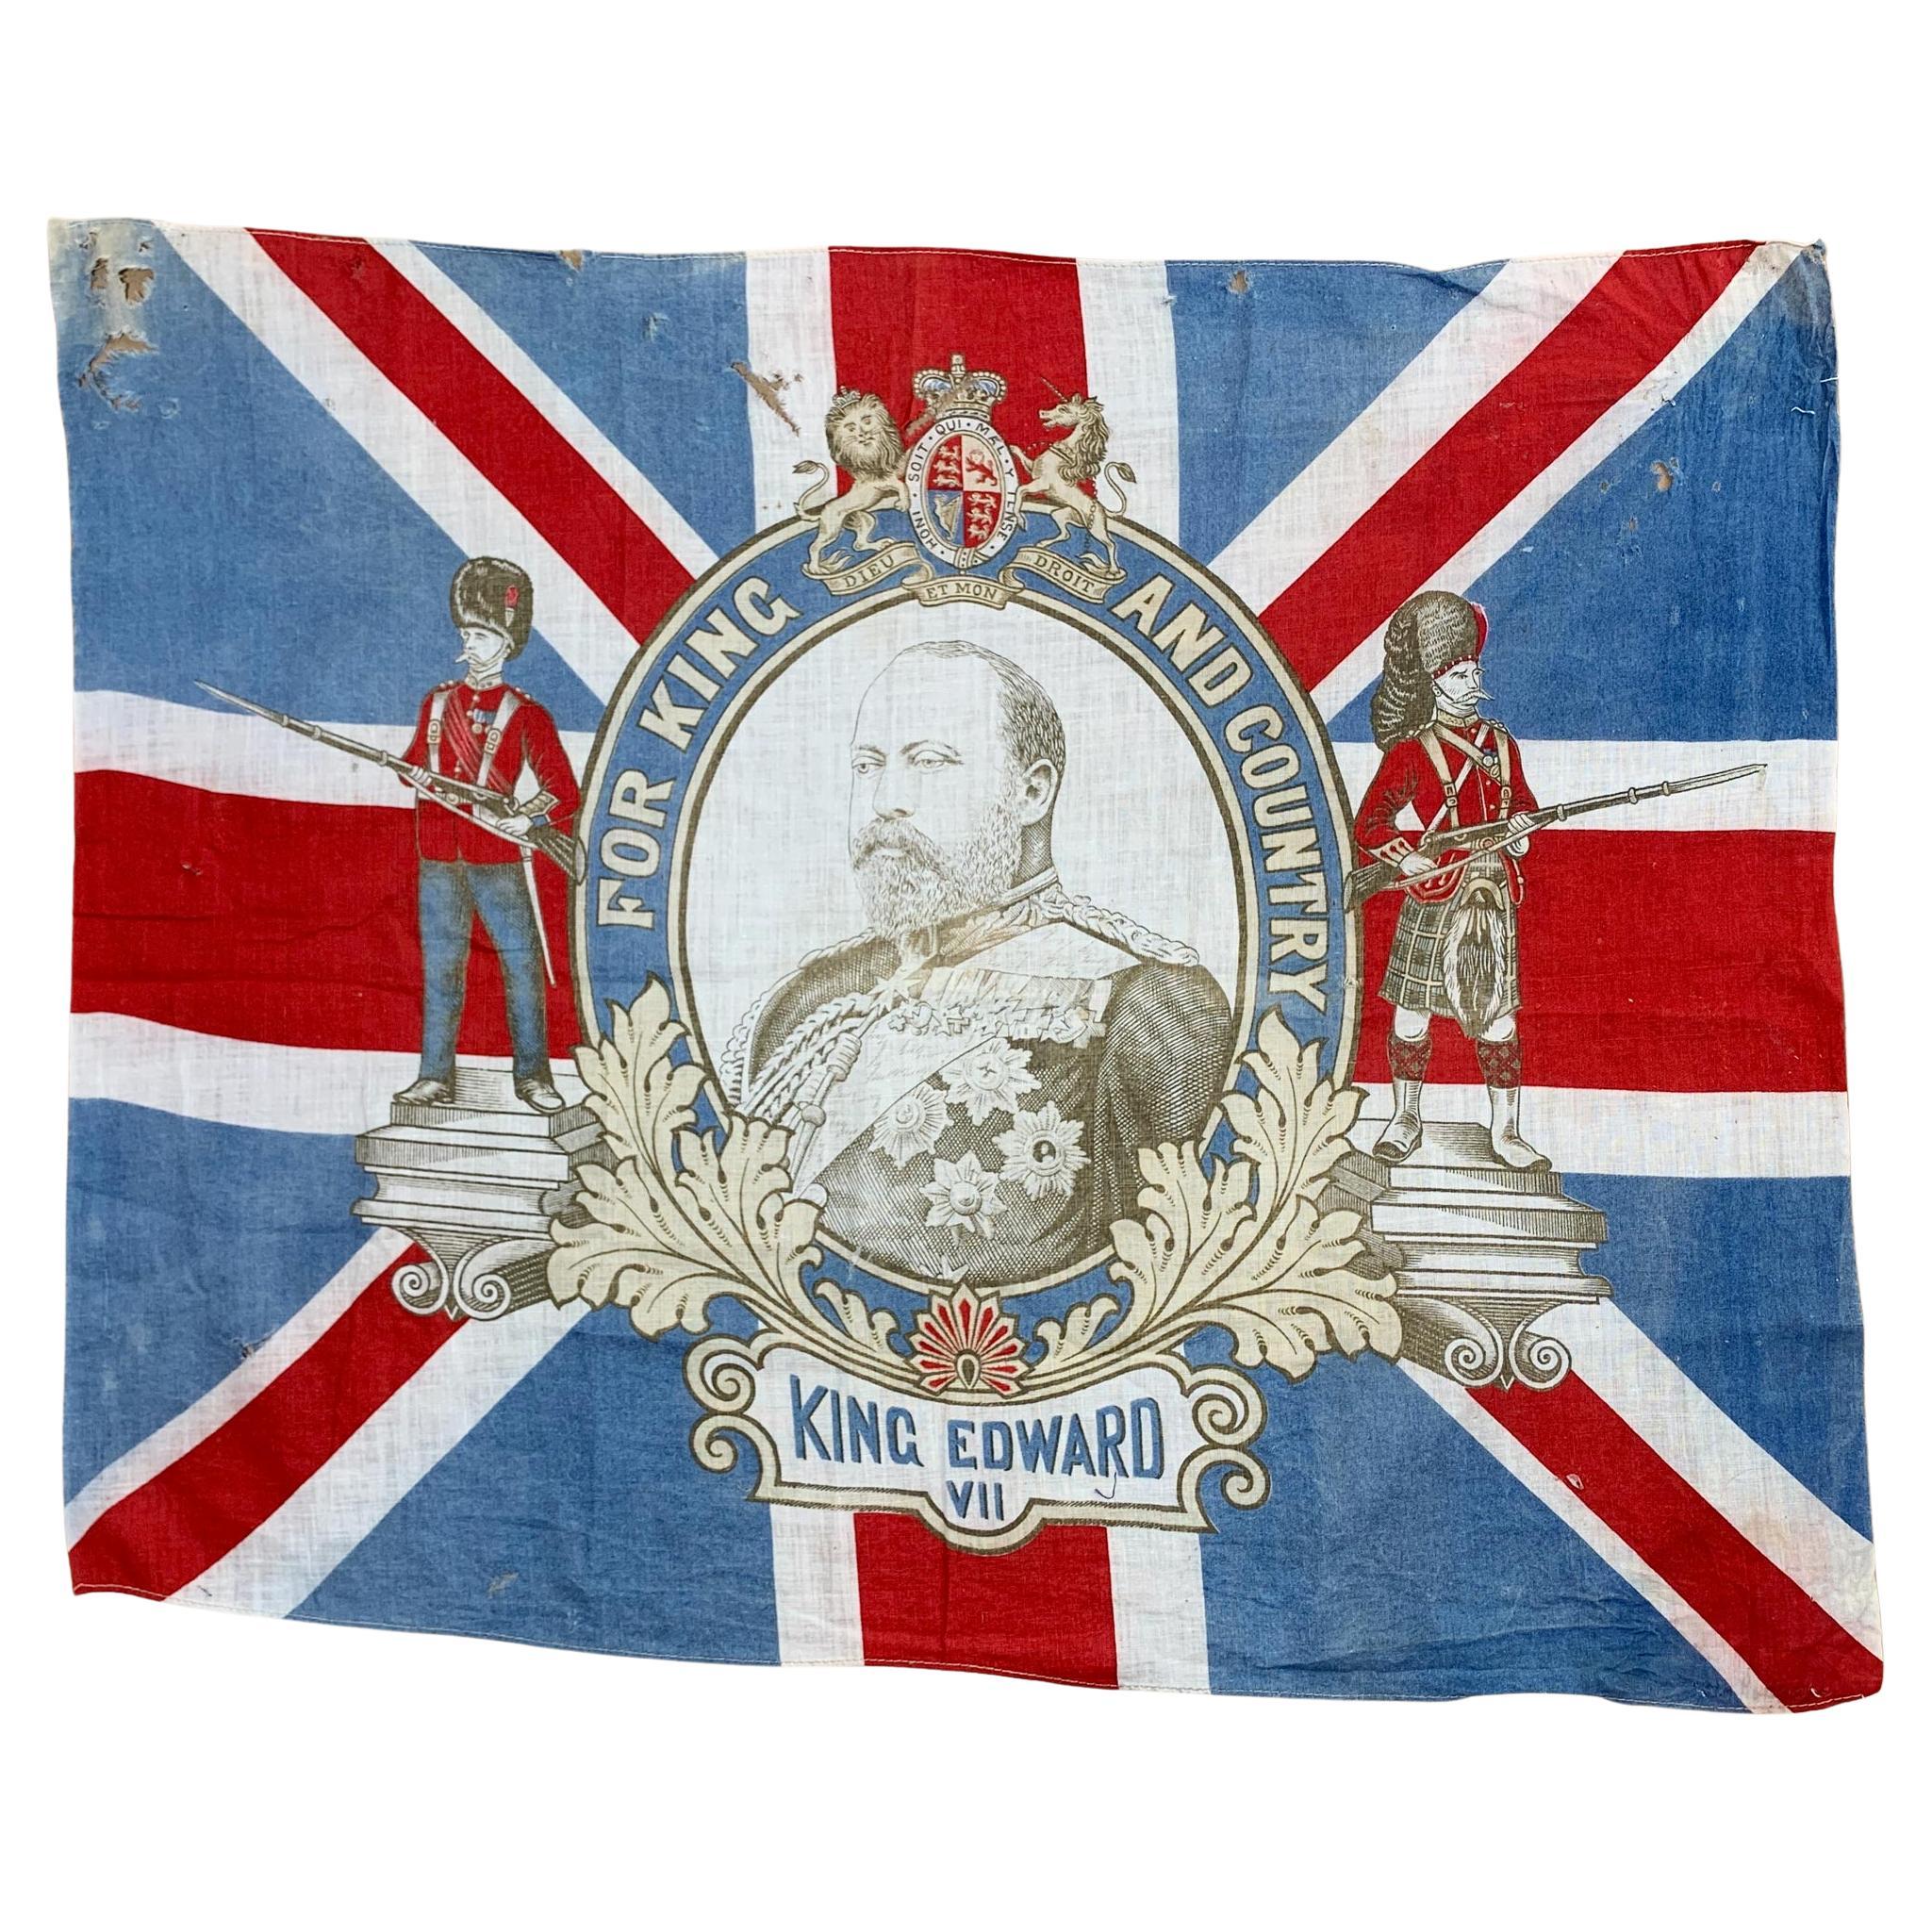 King Edward VII Coronation Flag, 1902